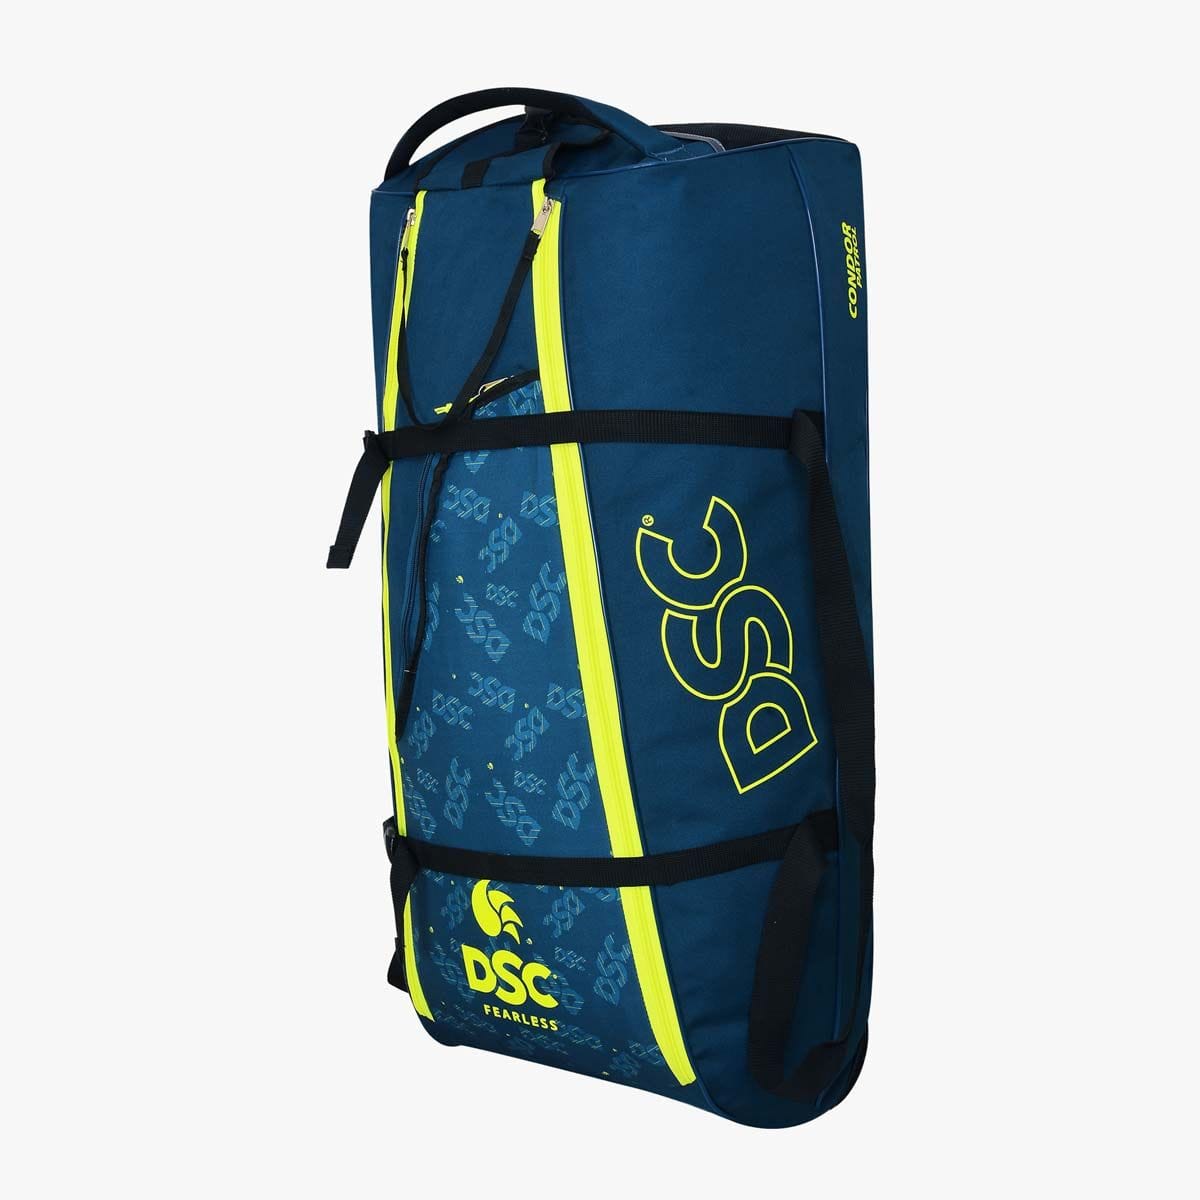 Adidas Cricket Bags DSC Condor Patrol Wheels Cricket Bag